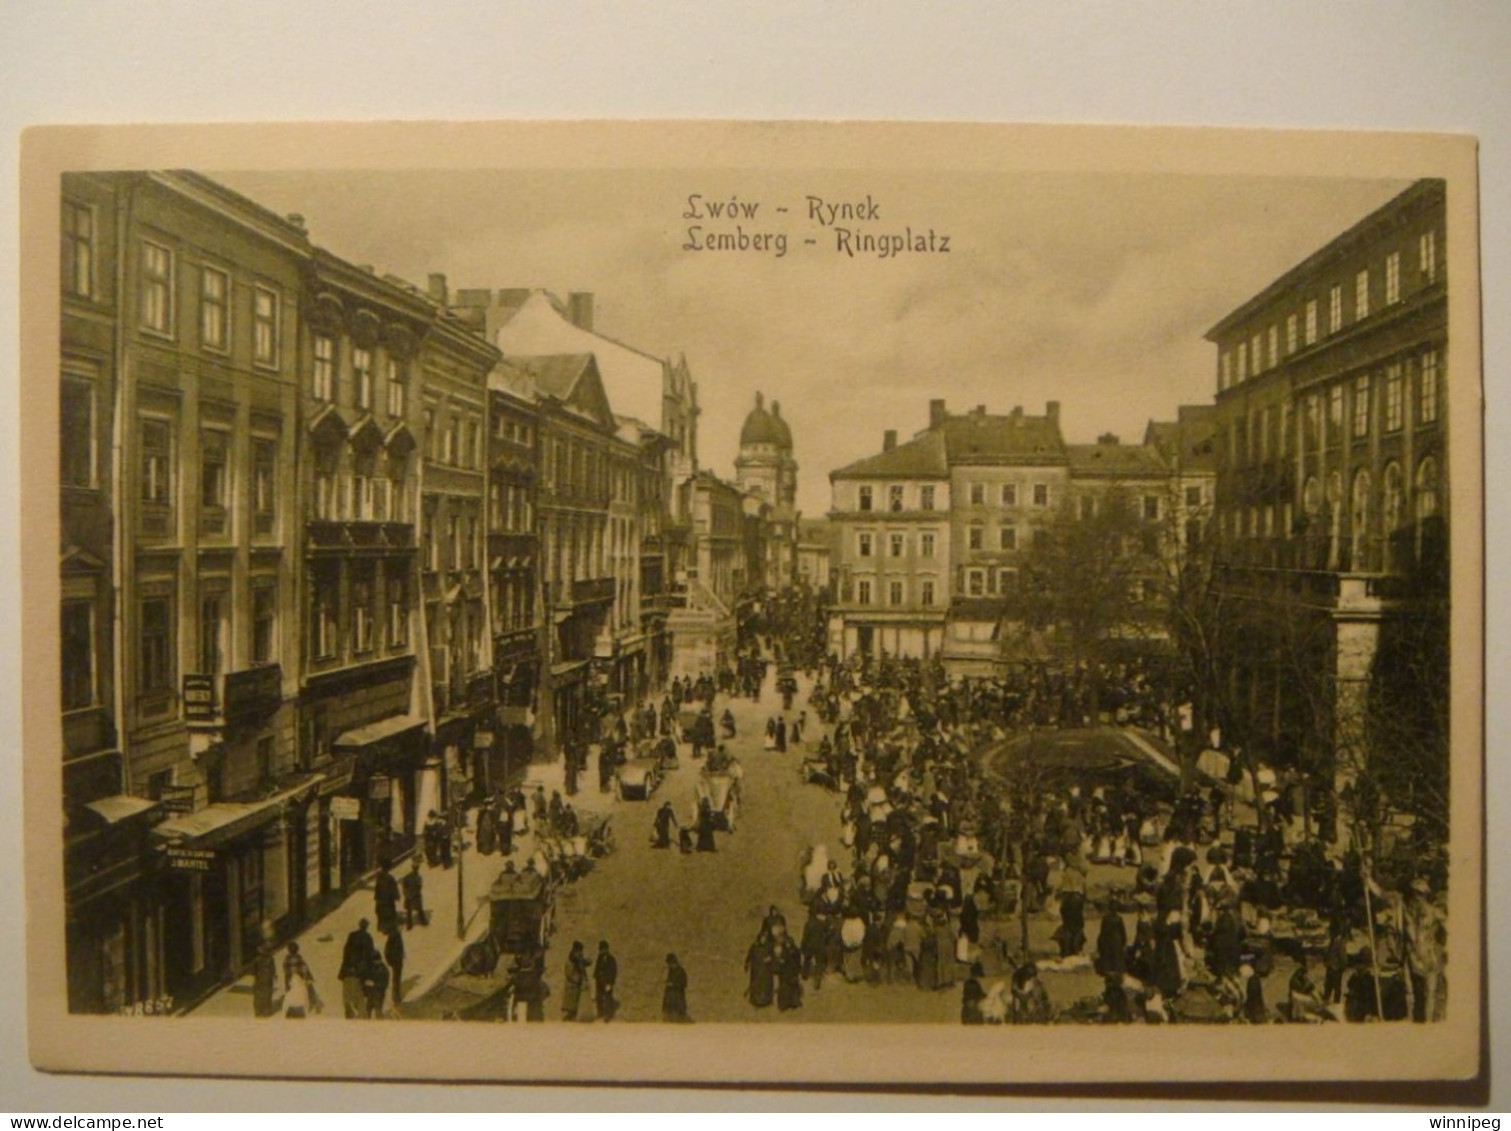 Lwow.Lemberg.2 Pc's.Rynek.Market.asyno Narodowe.WWI.German Occupation.Feldpost.1917.Kriegs-Lazarett 57.Poland Ukraine - Ukraine